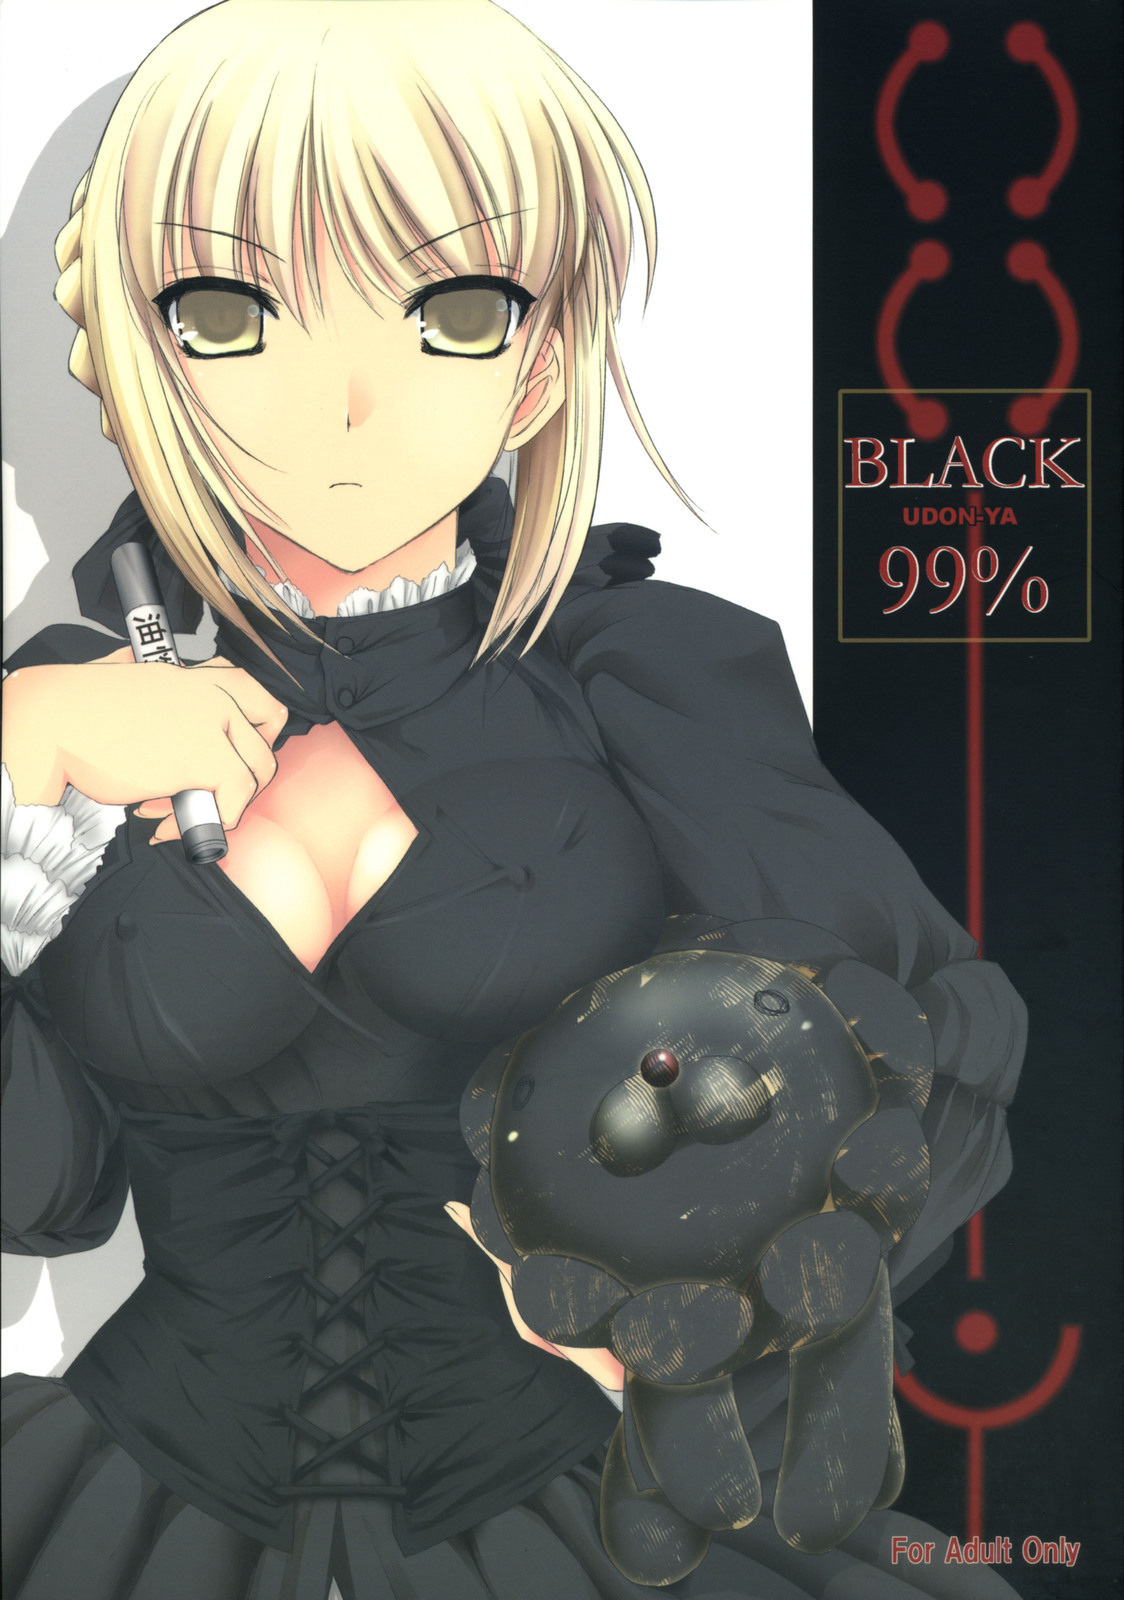 BLACK 99% fate hollow ataraxia hentai manga